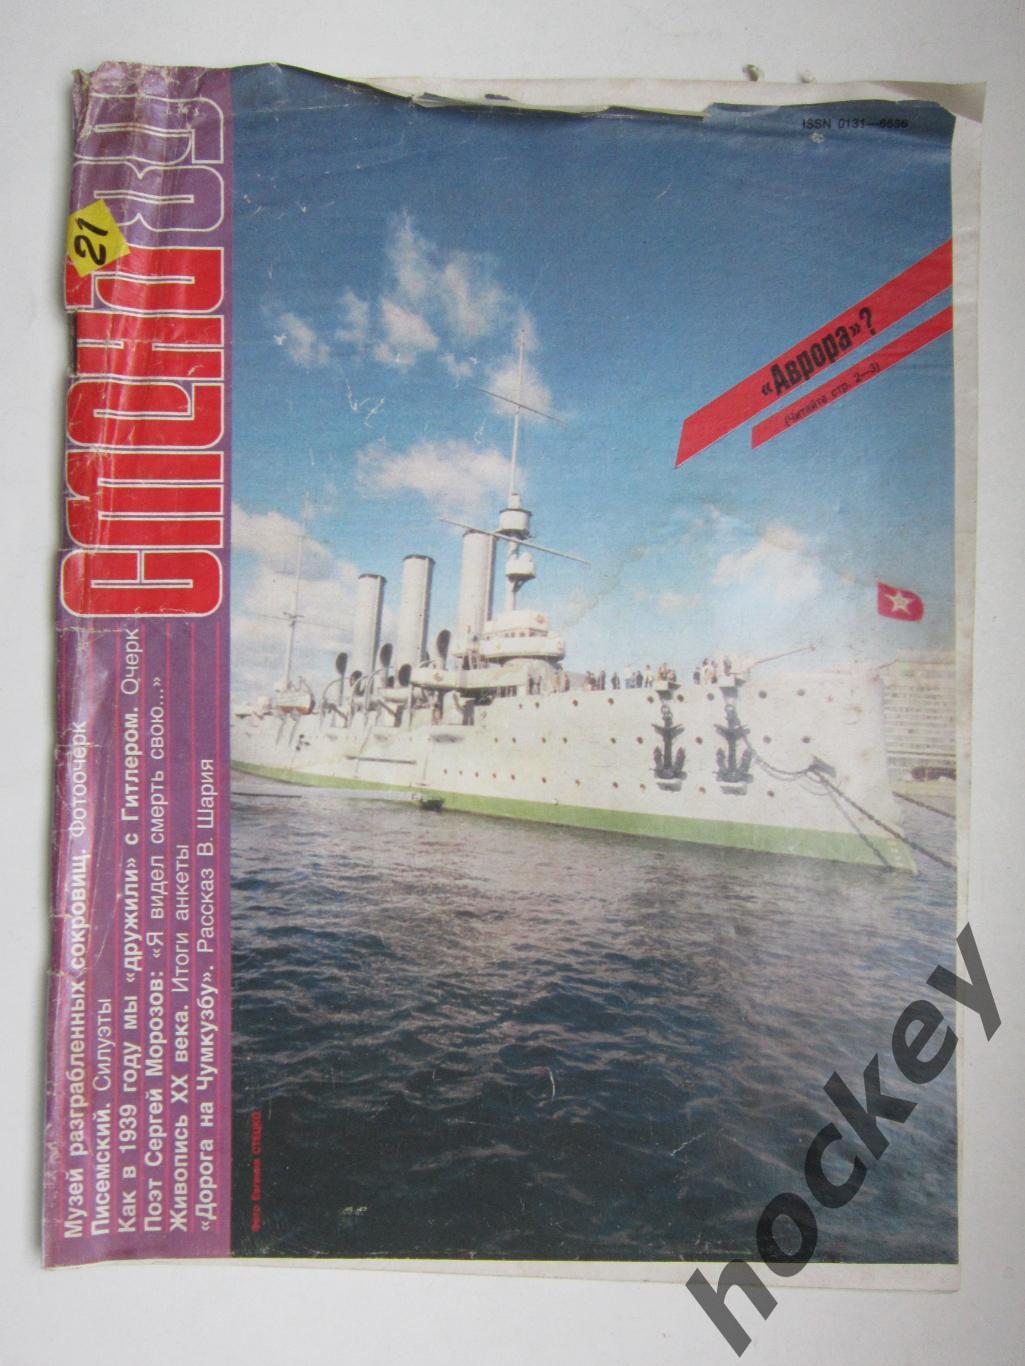 Журнал Смена № 21 (ноябрь). 1989 год